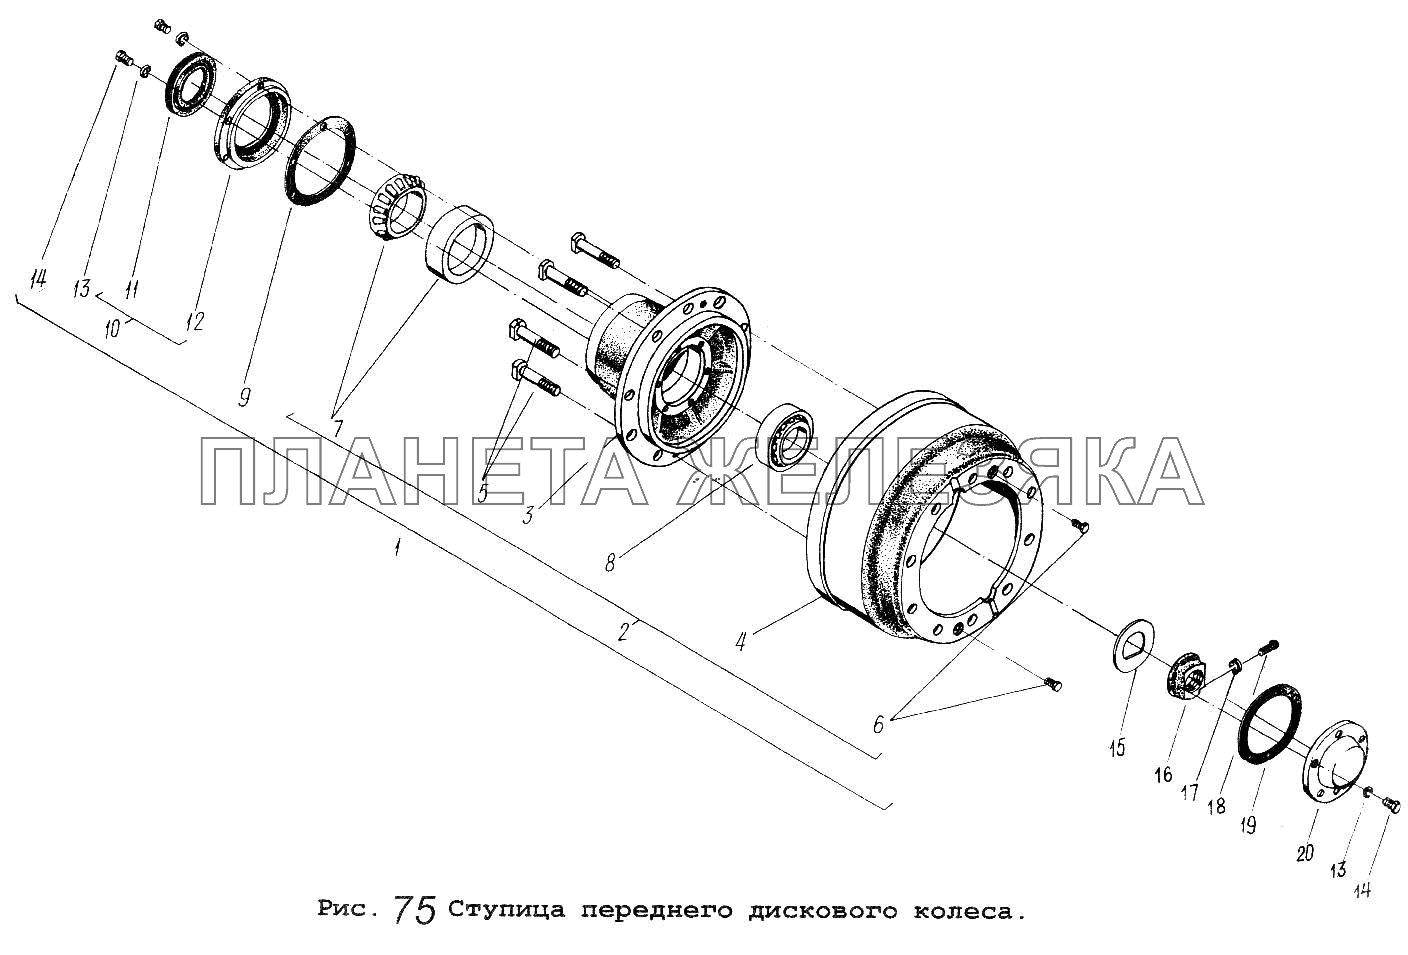 Ступица переднего дискового колеса МАЗ-54323